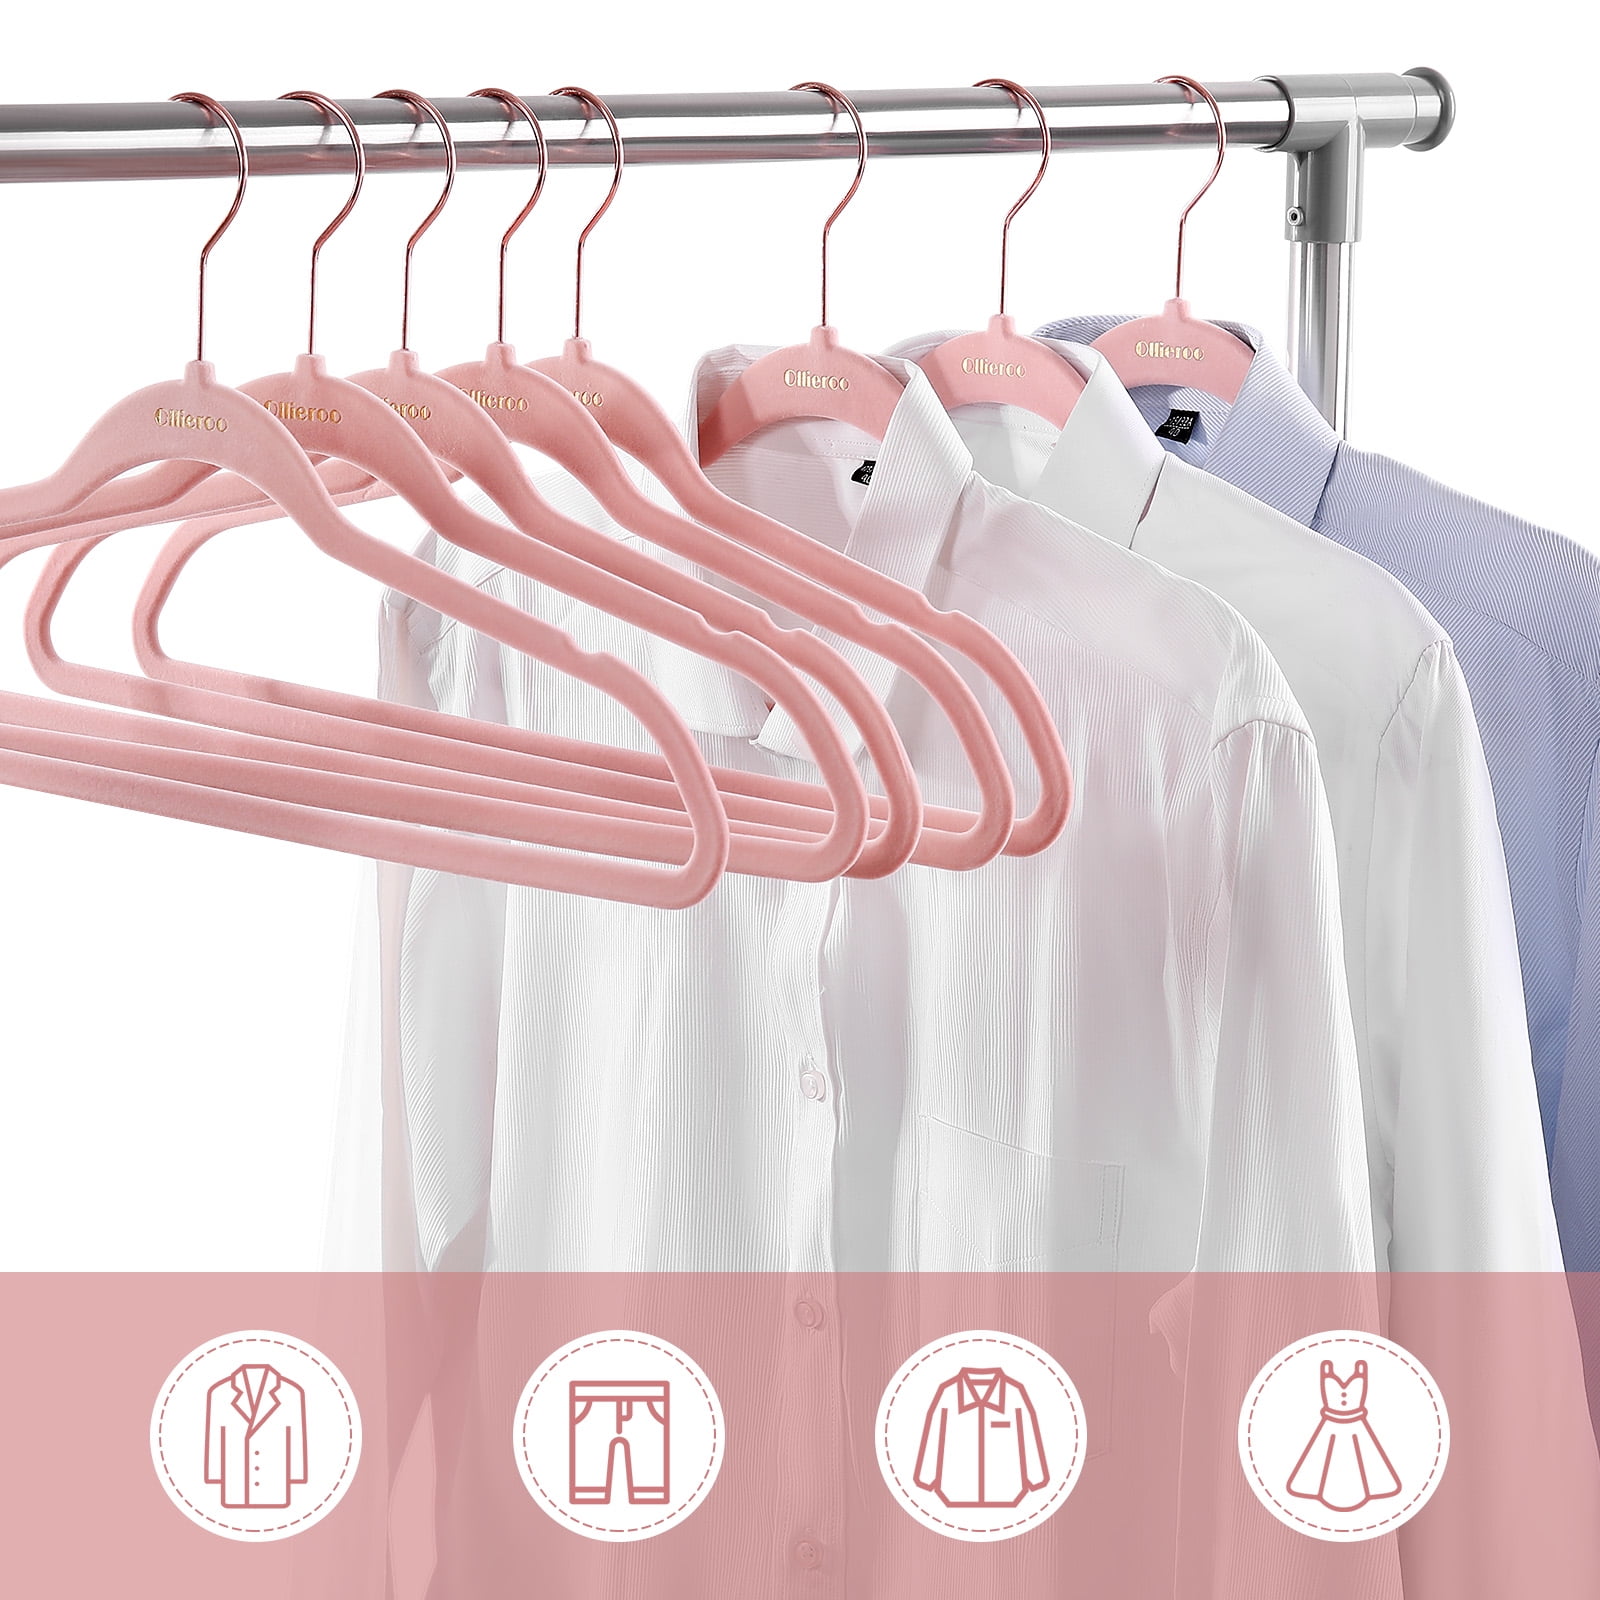 Dropship Non-Slip Velvet Clothing Hangers, 50 Pack to Sell Online